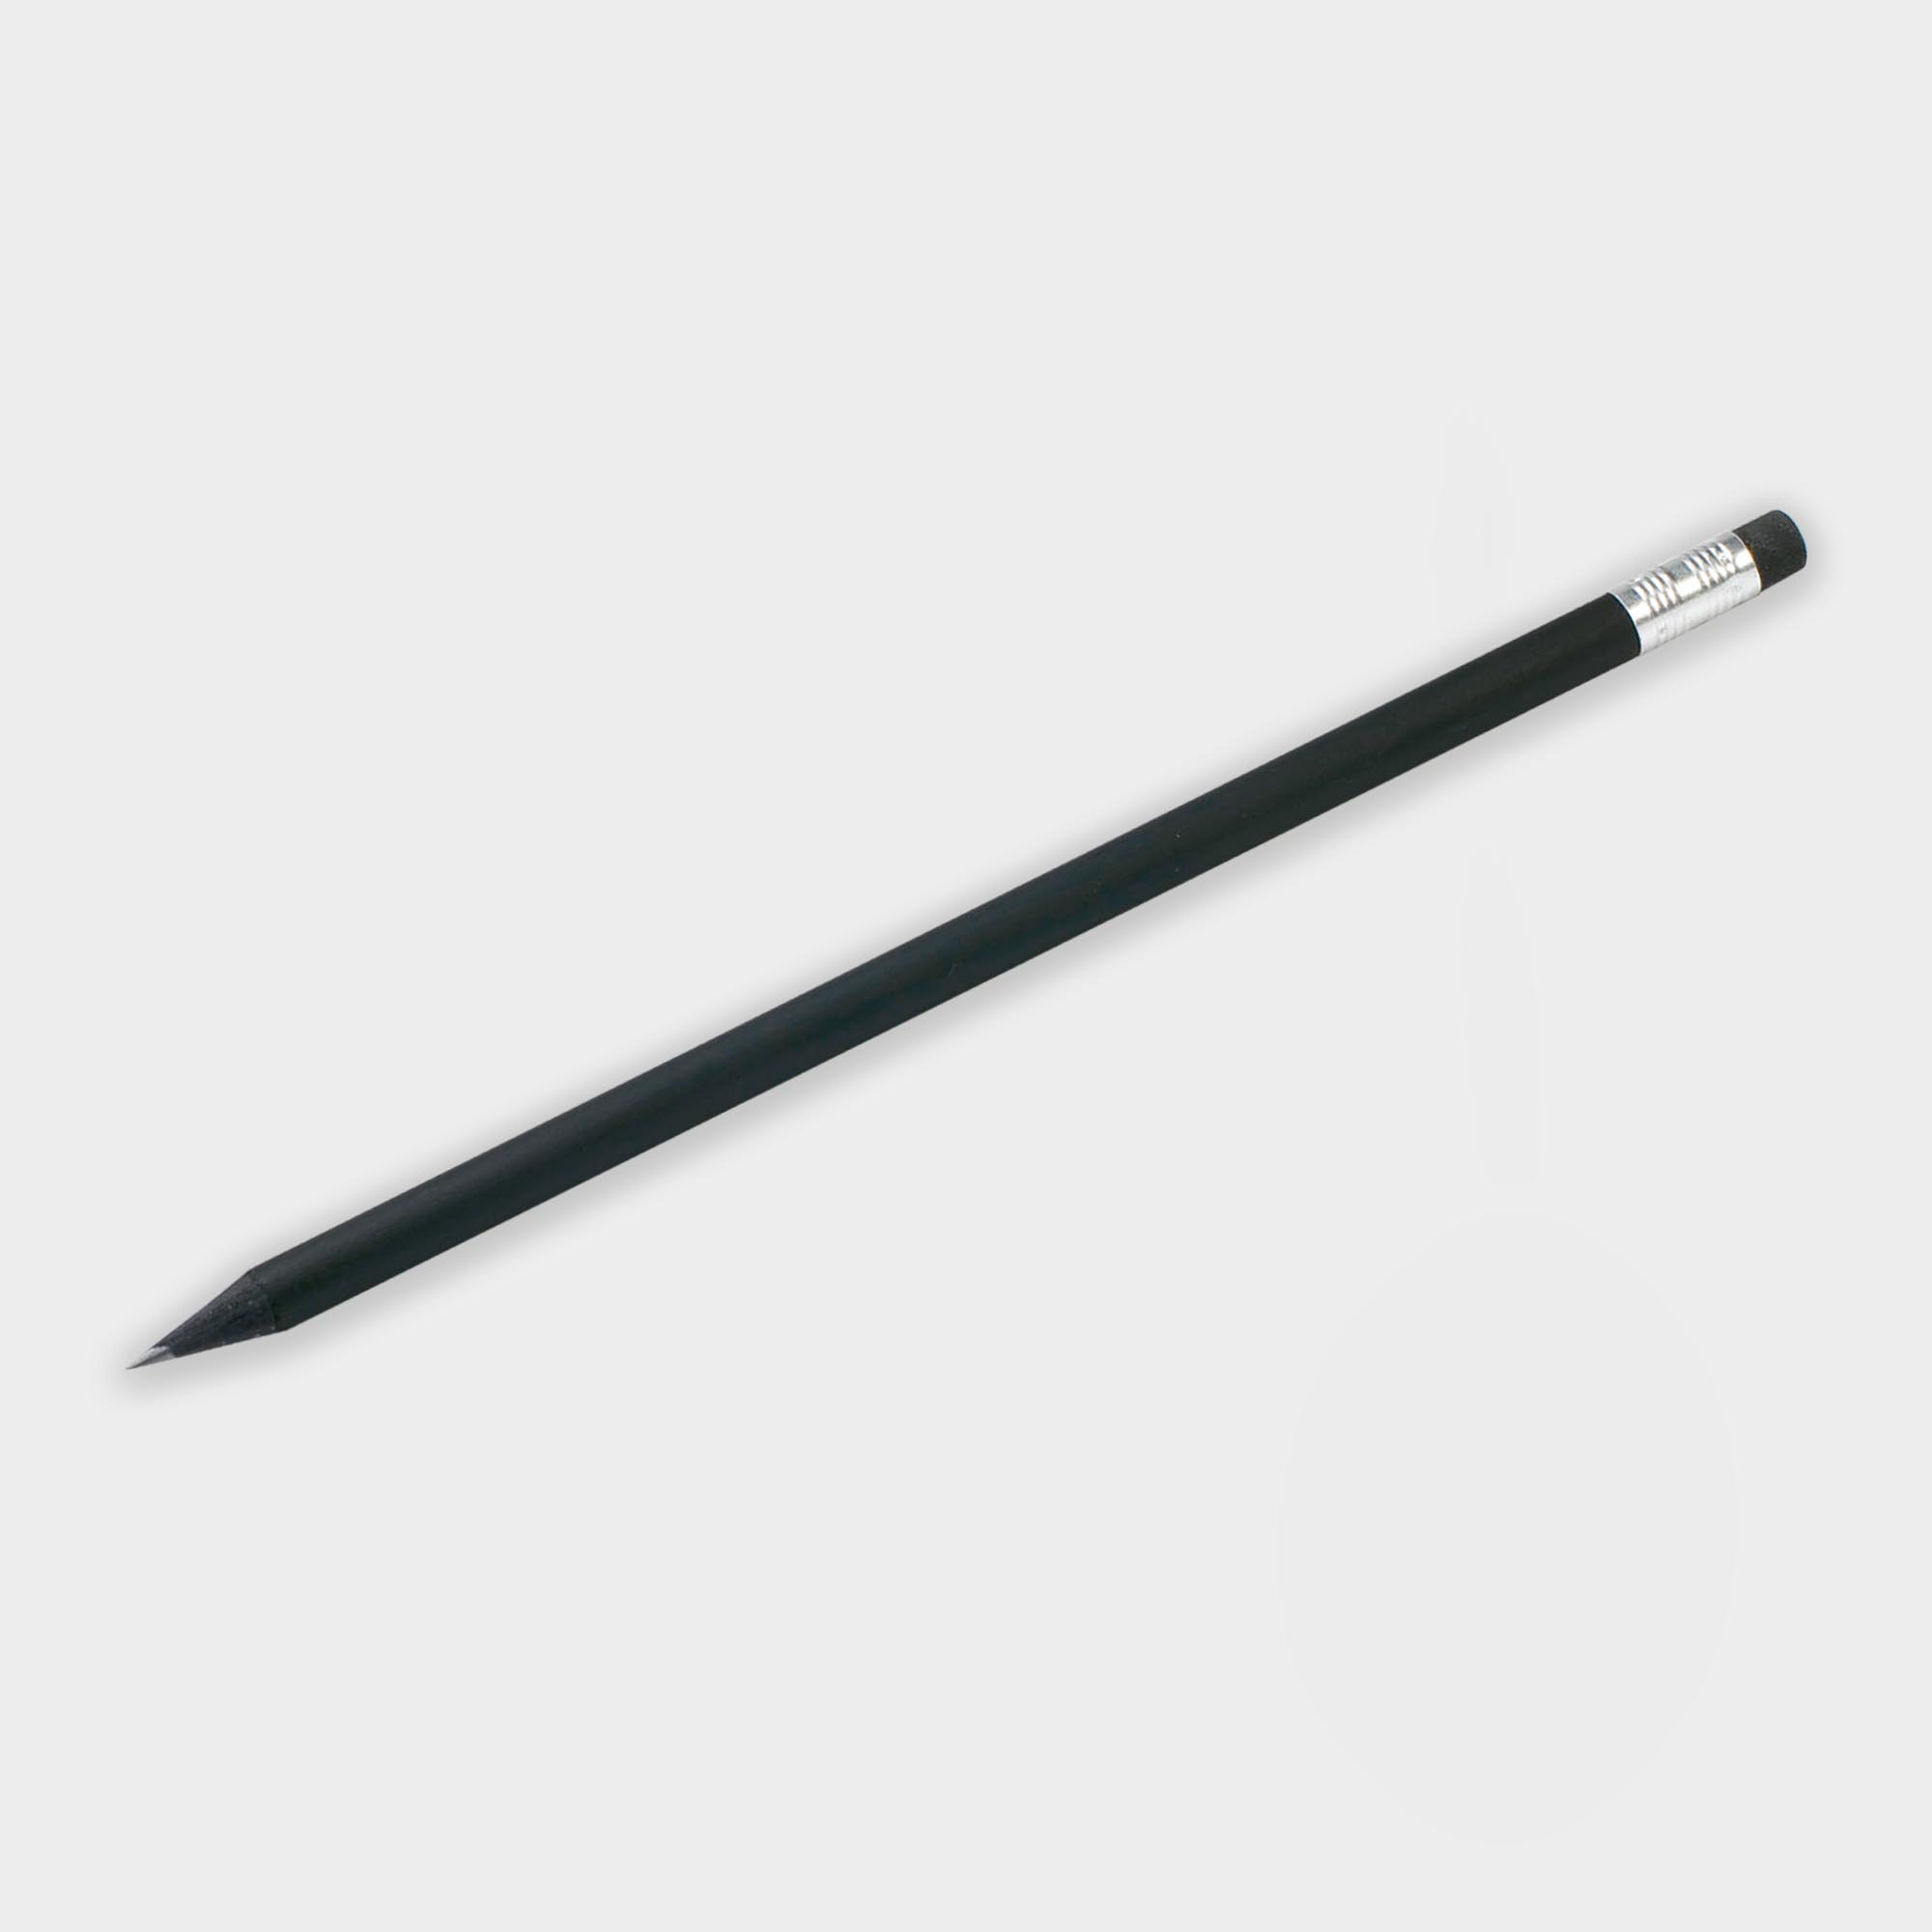 Branded Wooden Black Pencil with Eraser - FSC